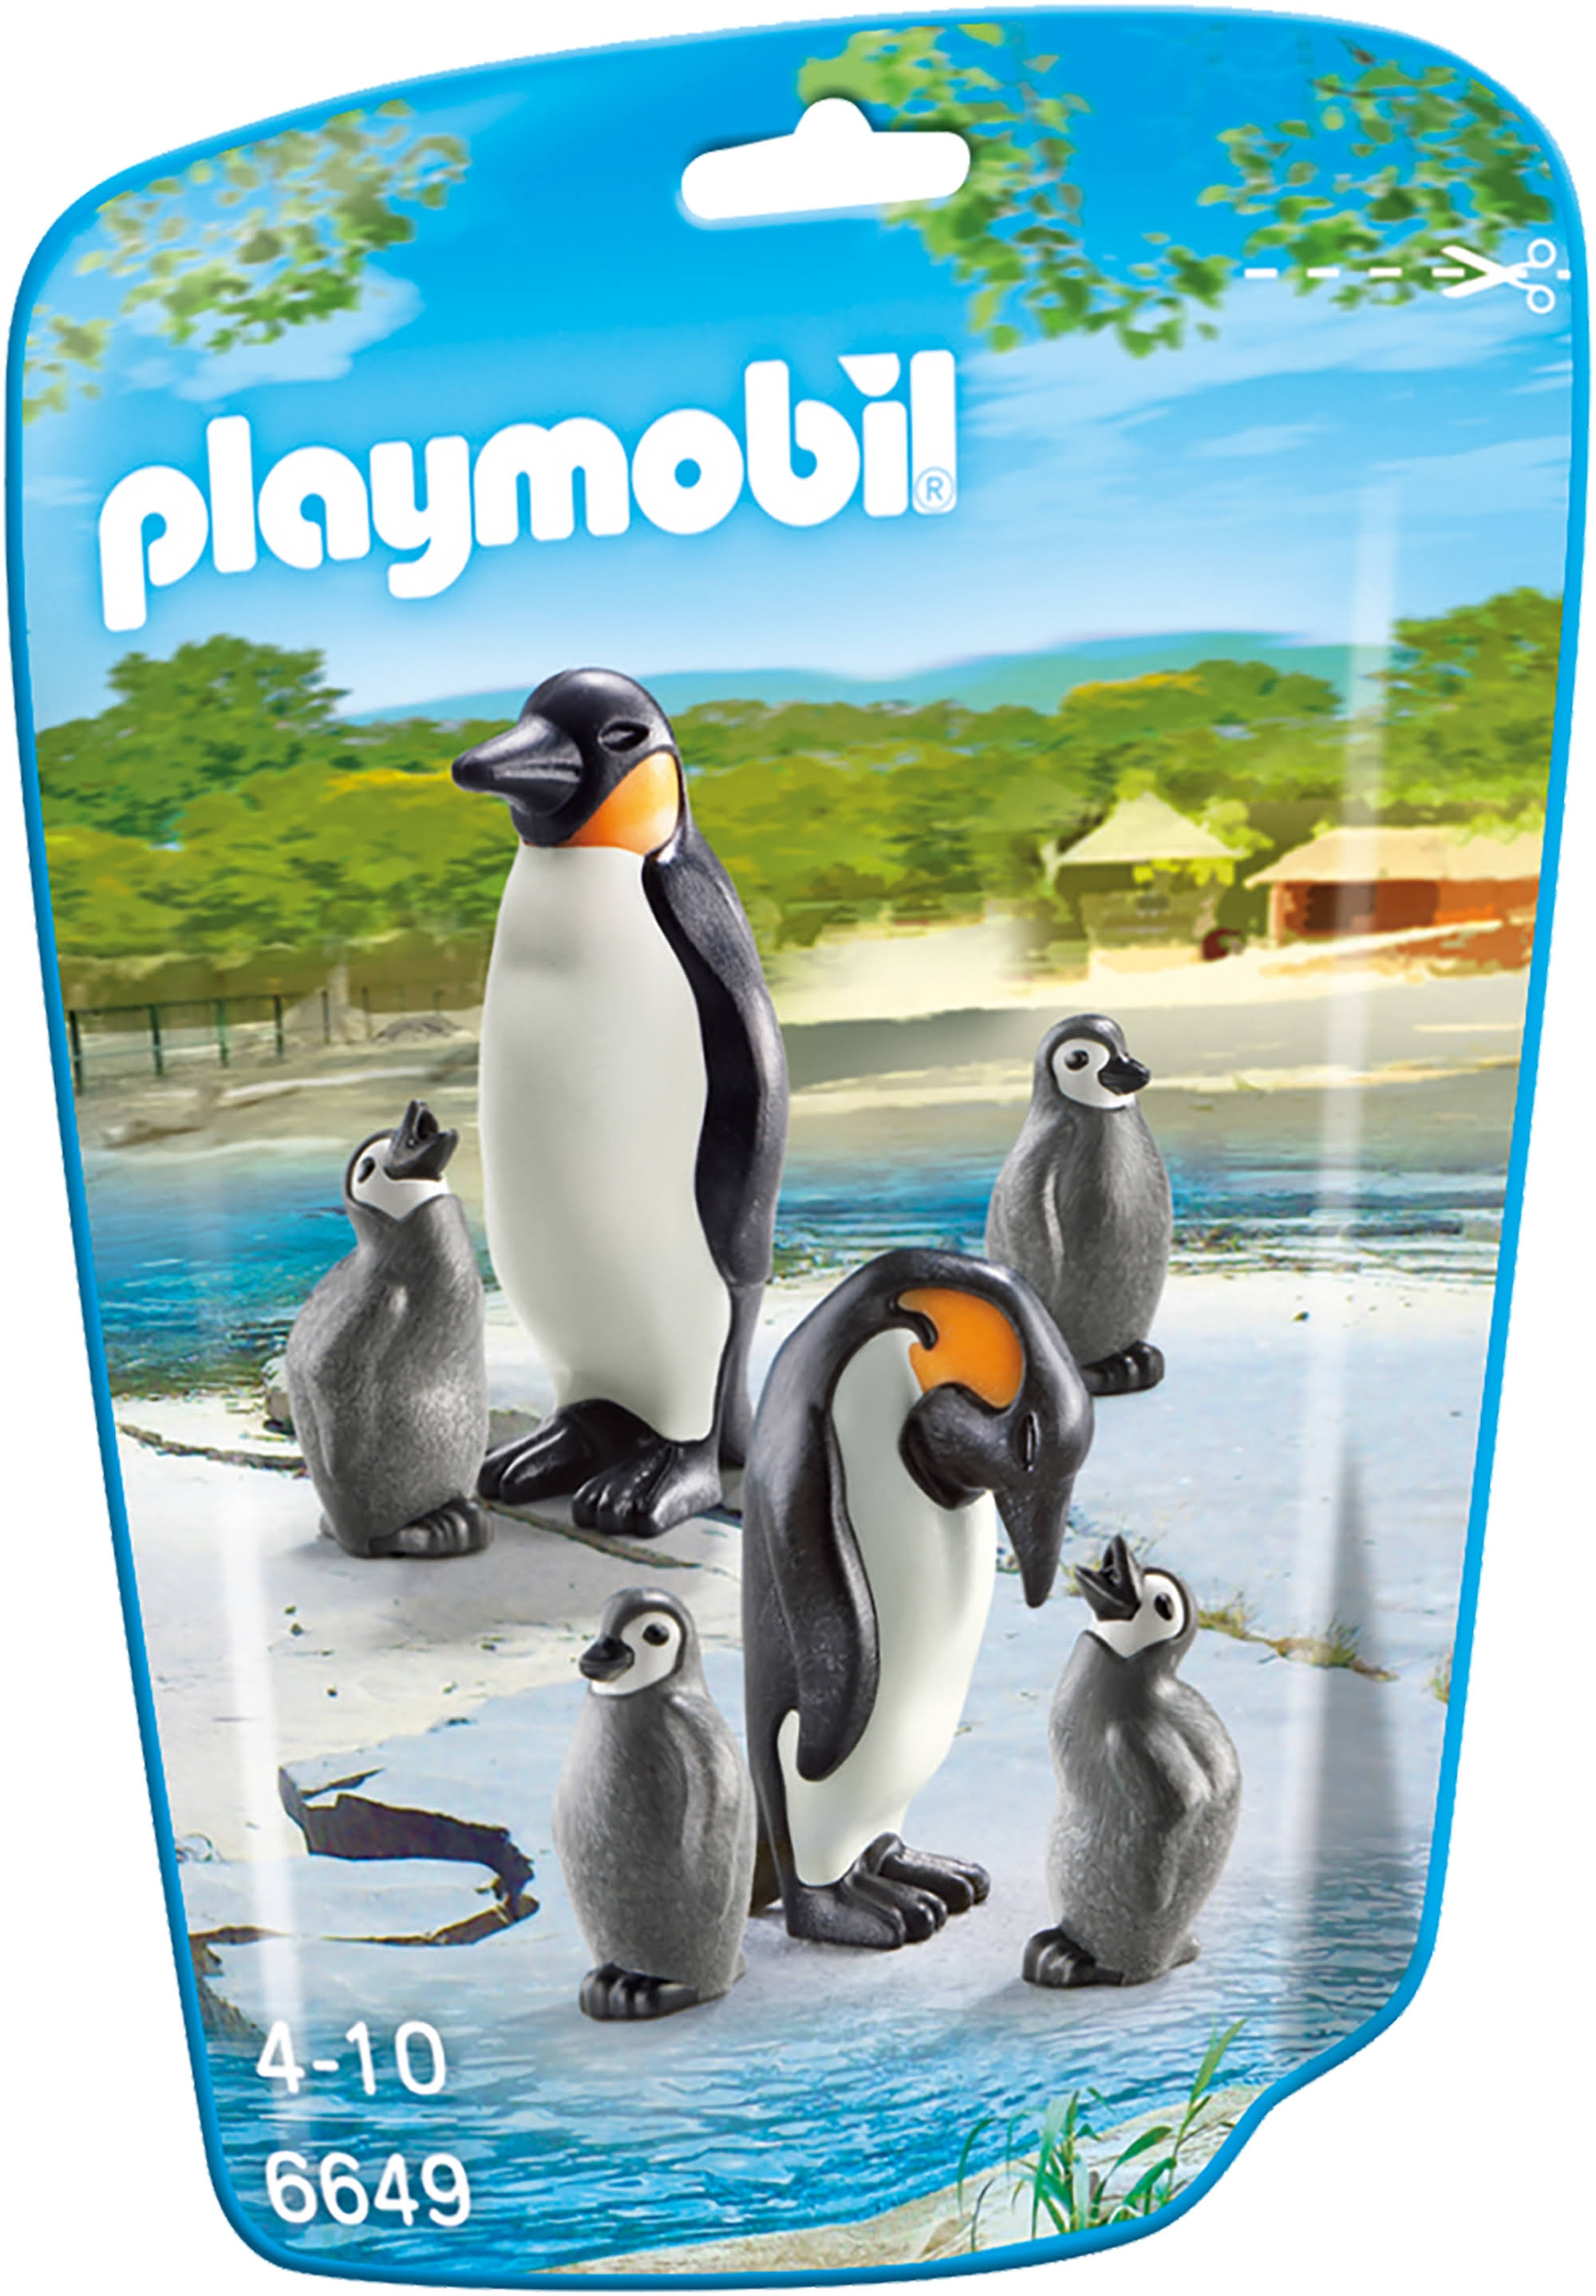 Playmobil 6649 Penguin Family